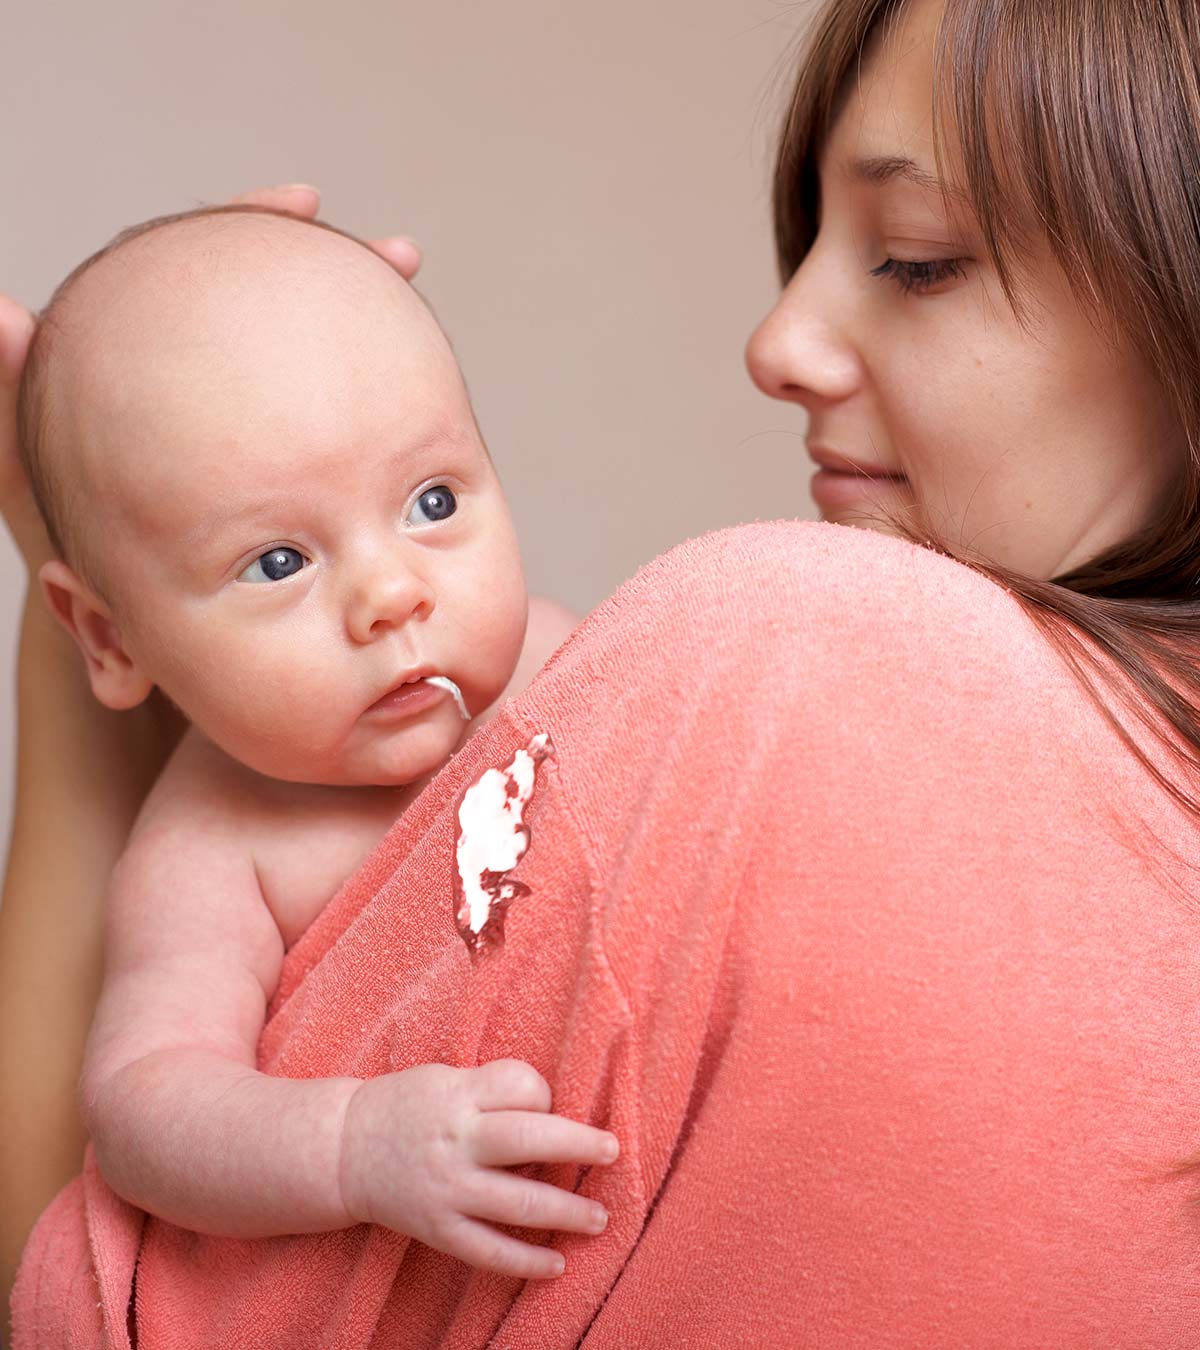 婴儿为什么会吐痰?如何减少?